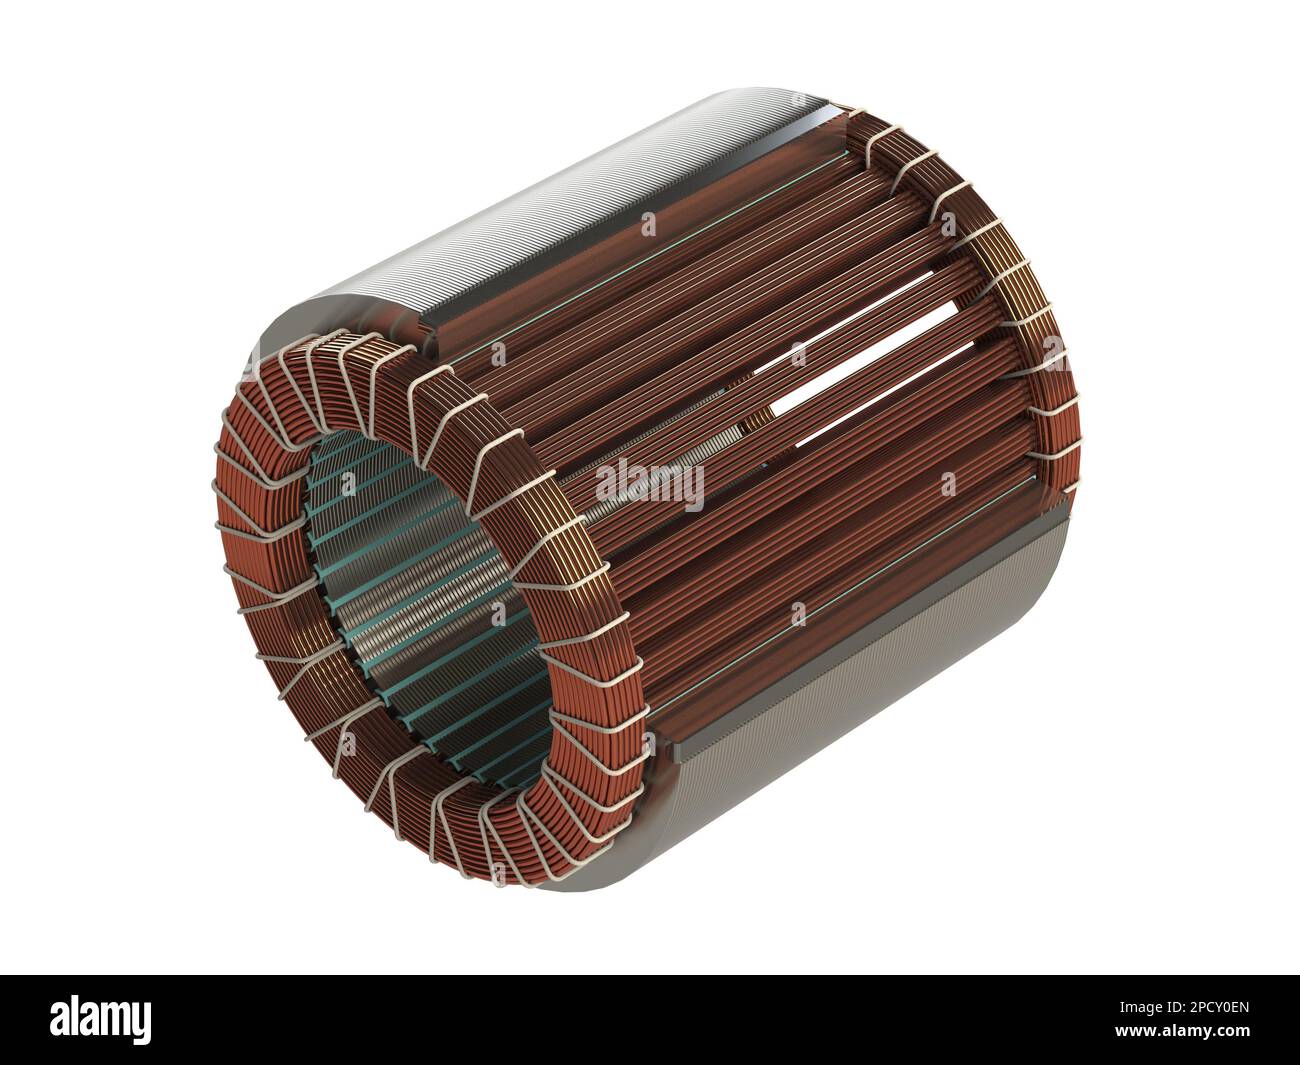 Boîtier de feuille de stator et bobinage en cuivre pour moteur électrique Banque D'Images